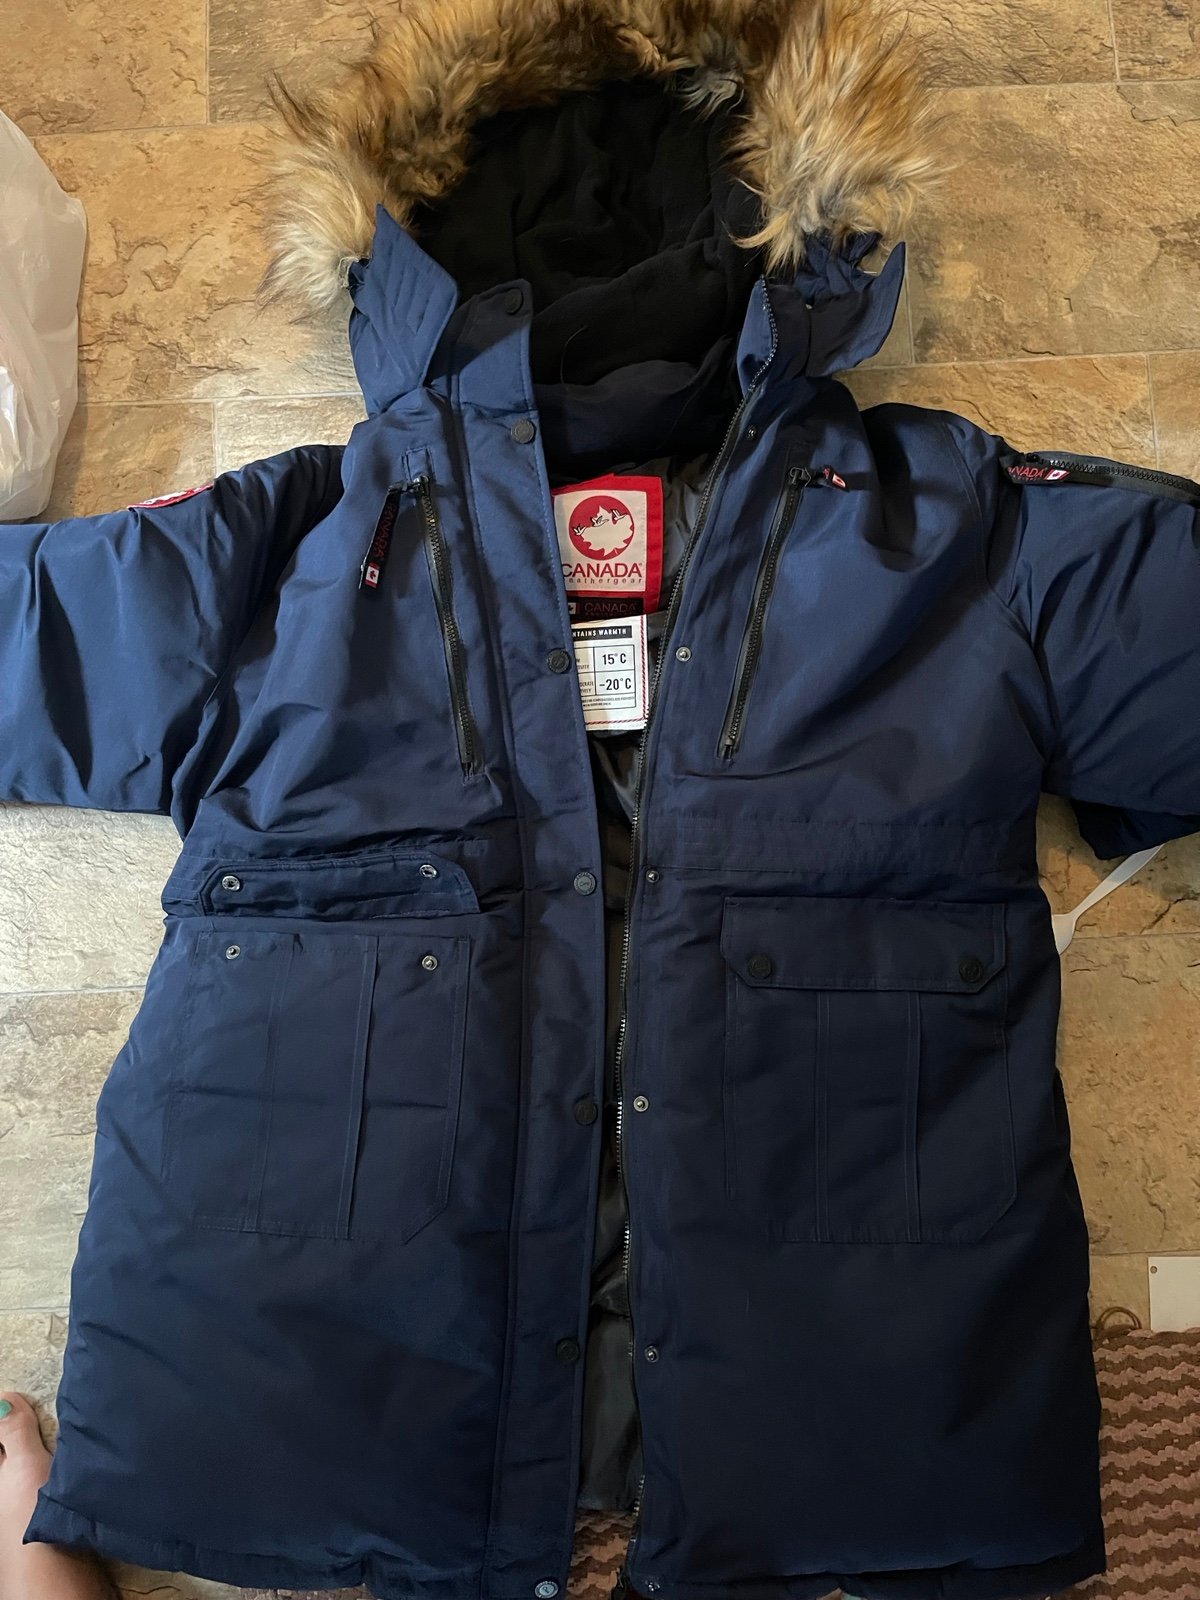 Jacket Canada weather gear jb51kTZPA